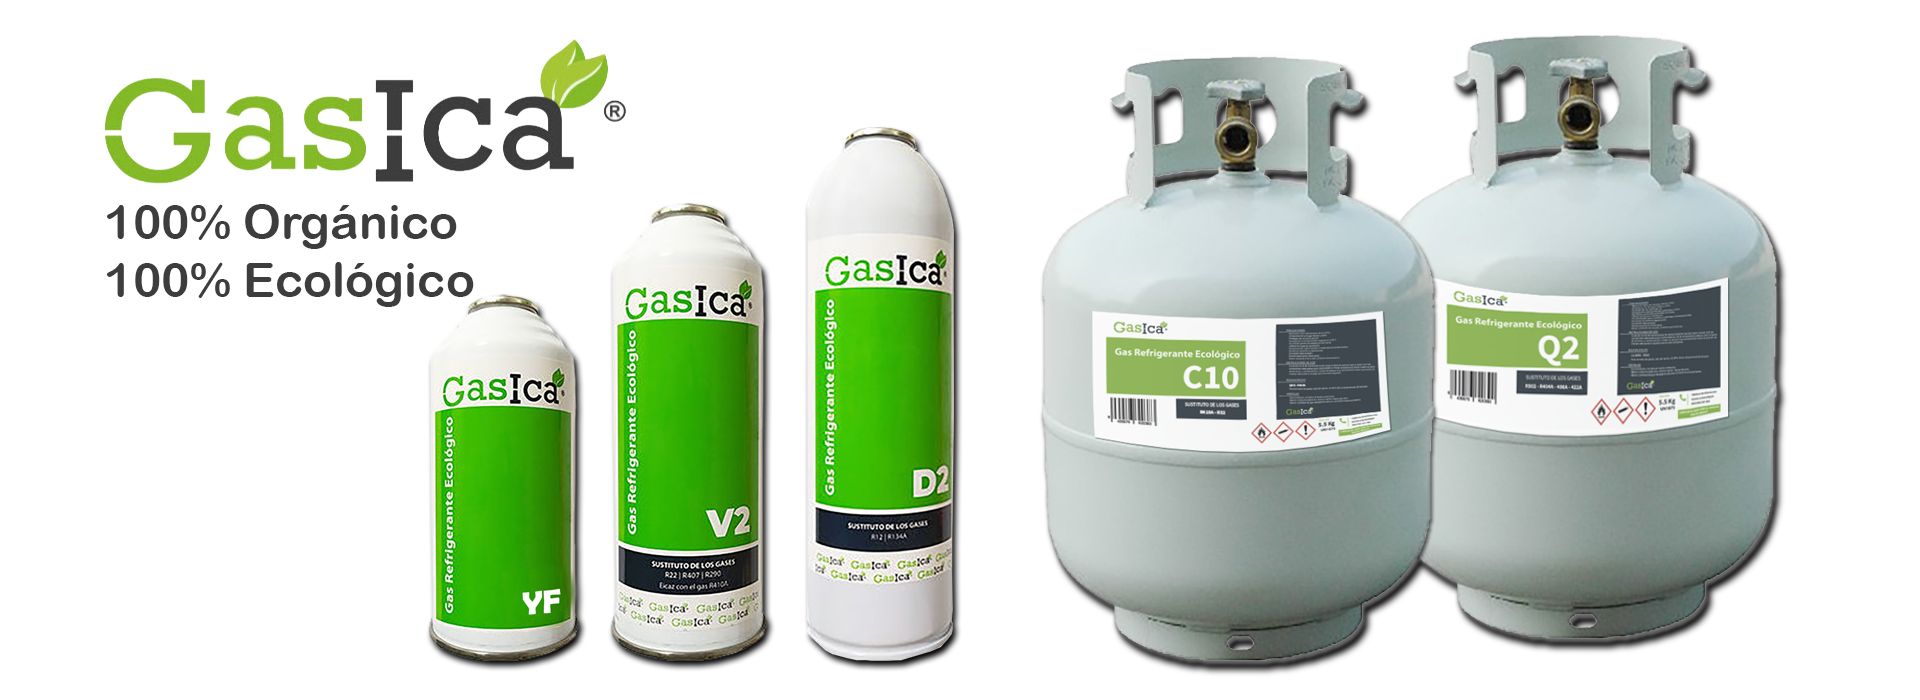 factor Regresa Alaska 🥇 GASICA. El mejor Gas ecológico y sustitutivo